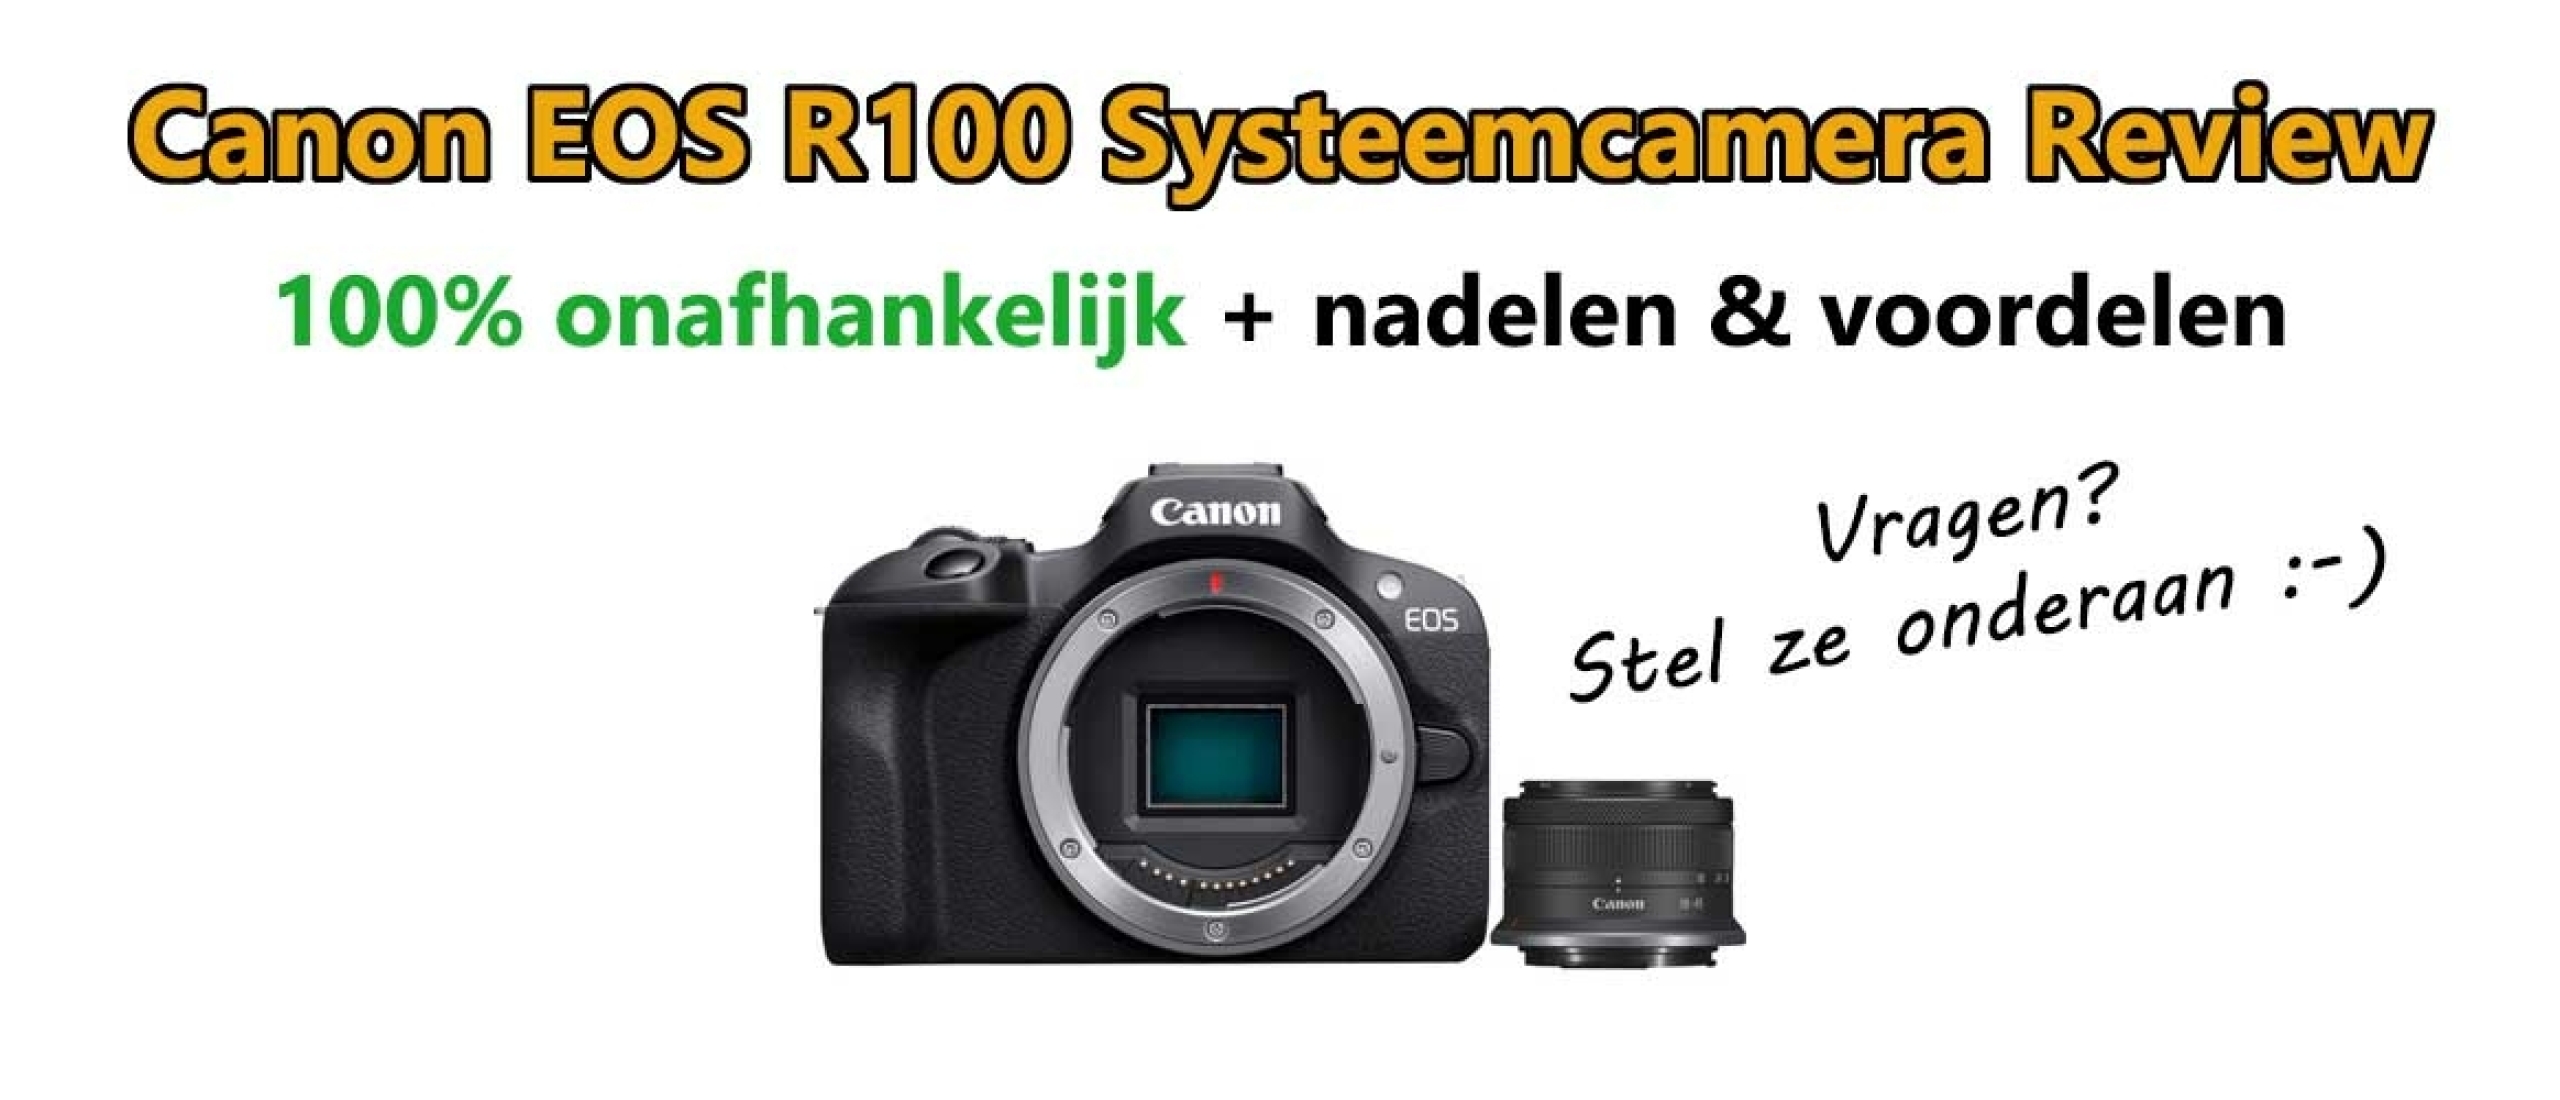 Canon EOS R100 Systeemcamera Review: Nadelen & Voordelen